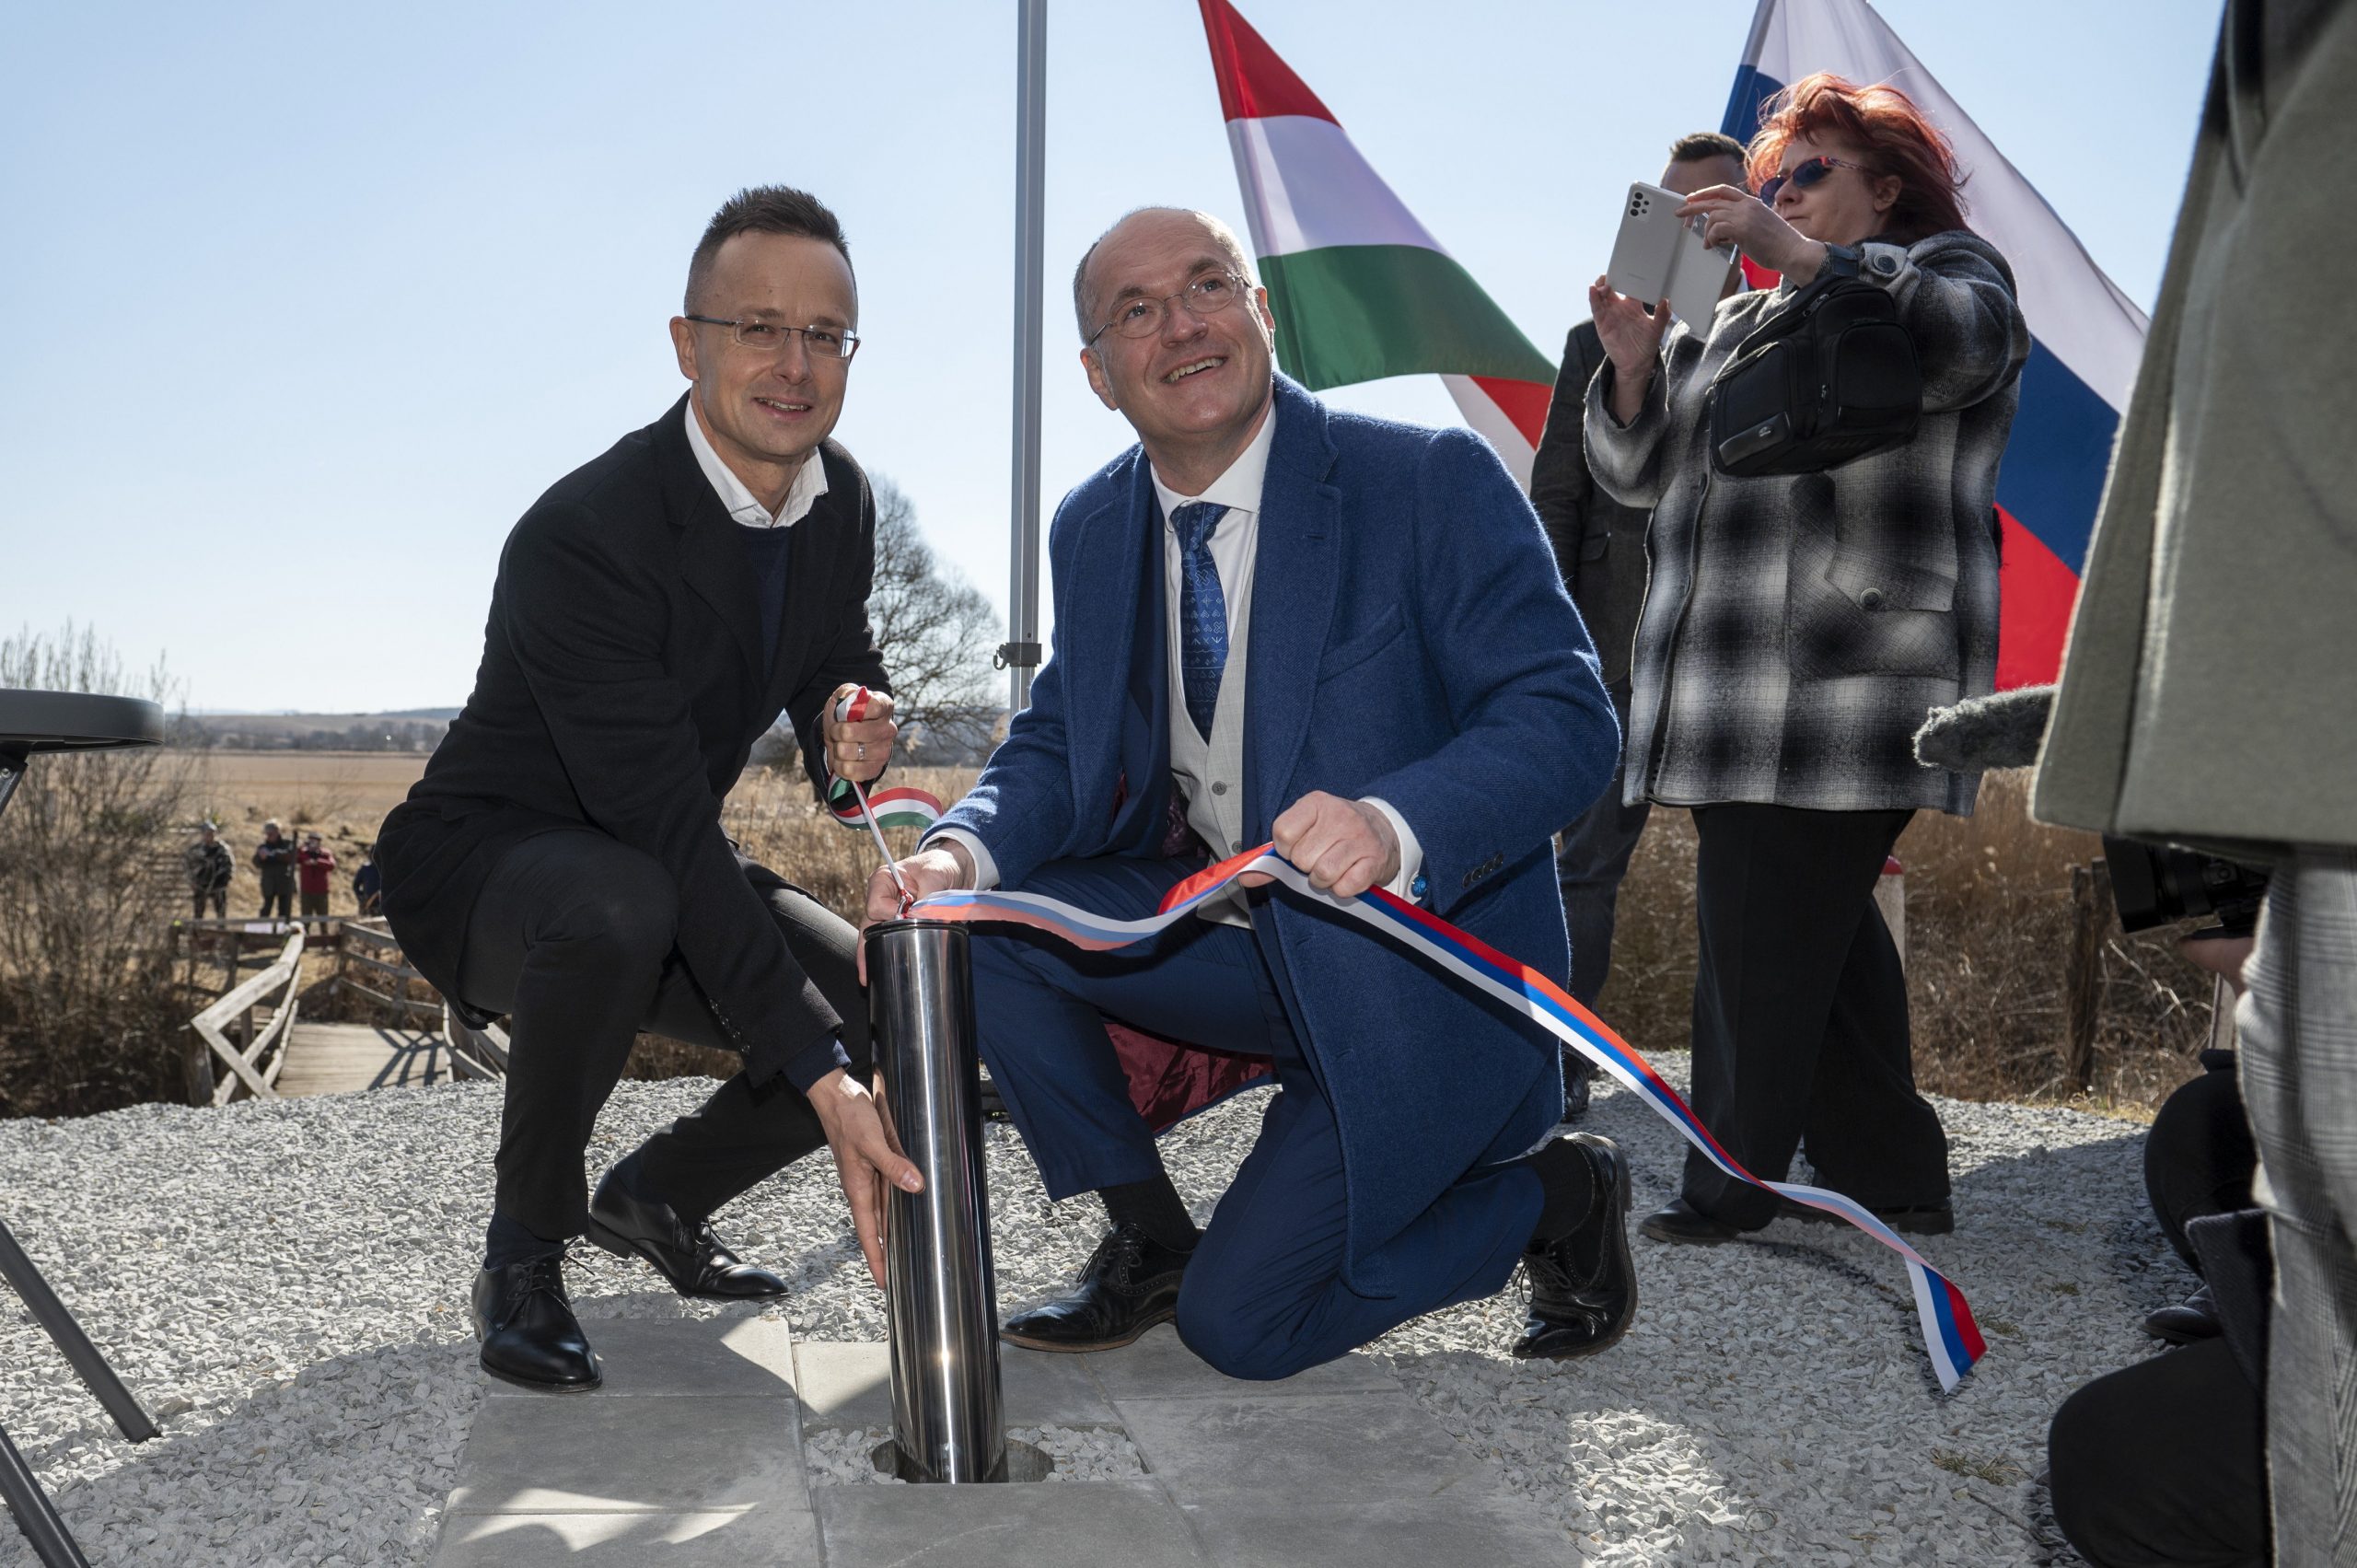 FM Szijjártó: Hungary, Slovakia to Build New Bridge